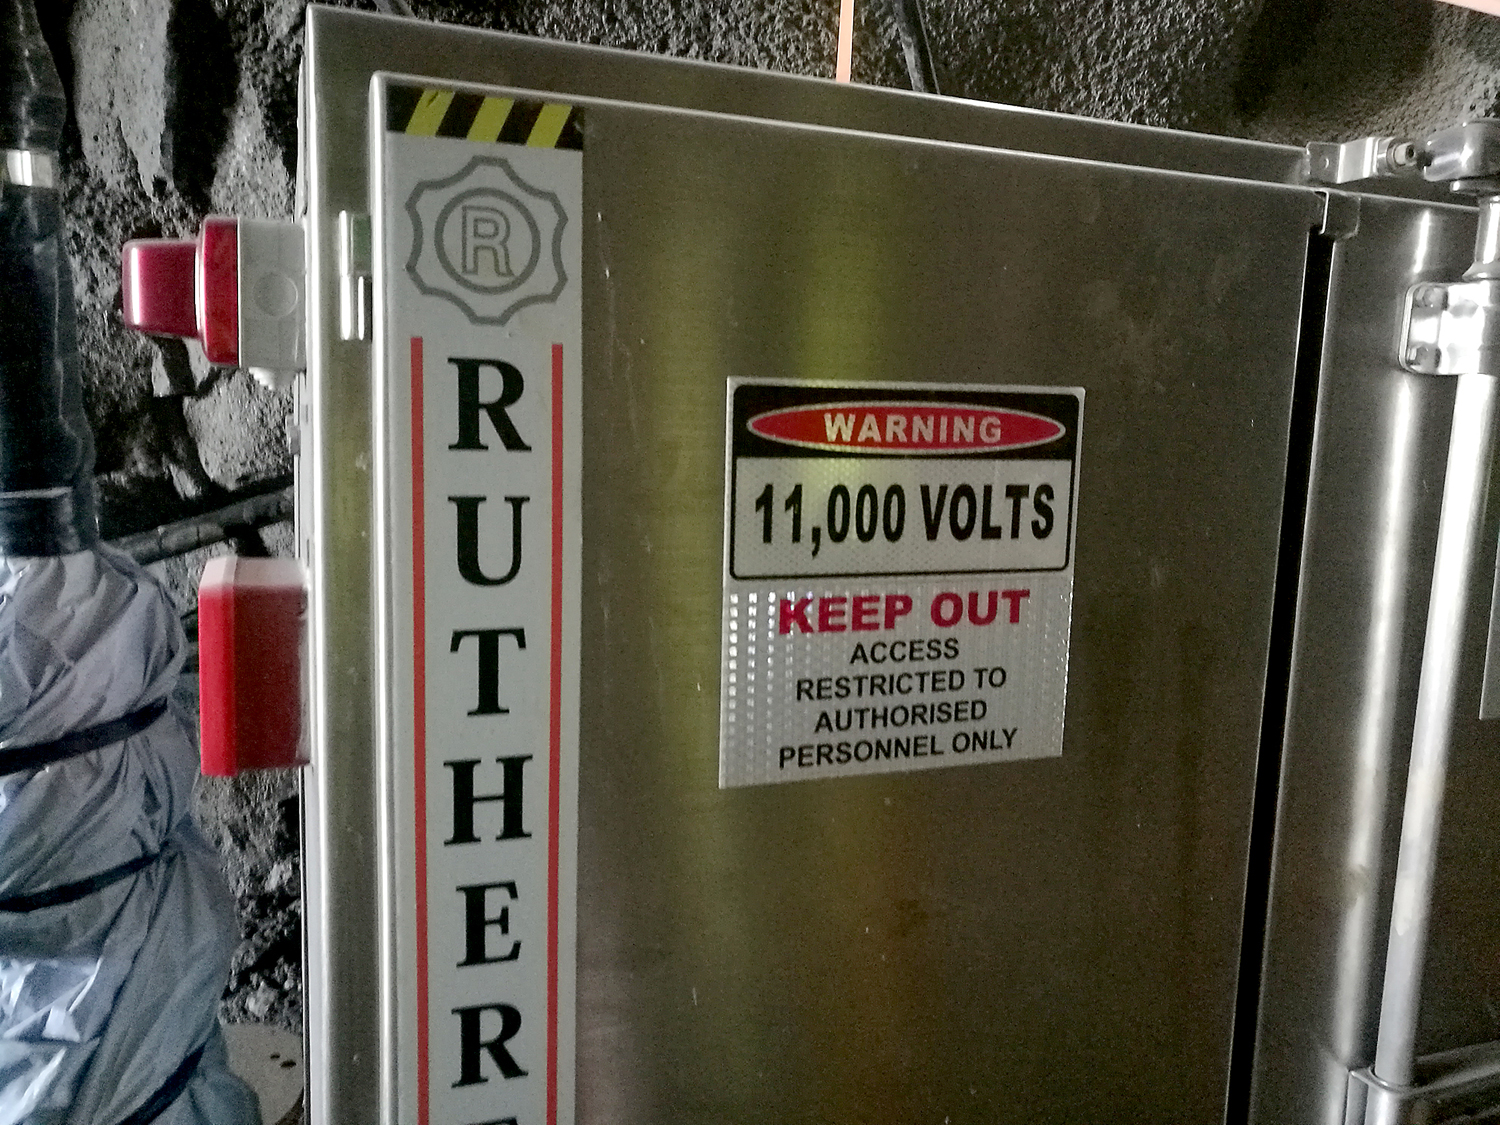 Bilden föreställer ett grått metallskåp med en varningsskylt på. Warning, 11000 volts, keep out, access restricted tp authorised personnel only, står det på skylten.